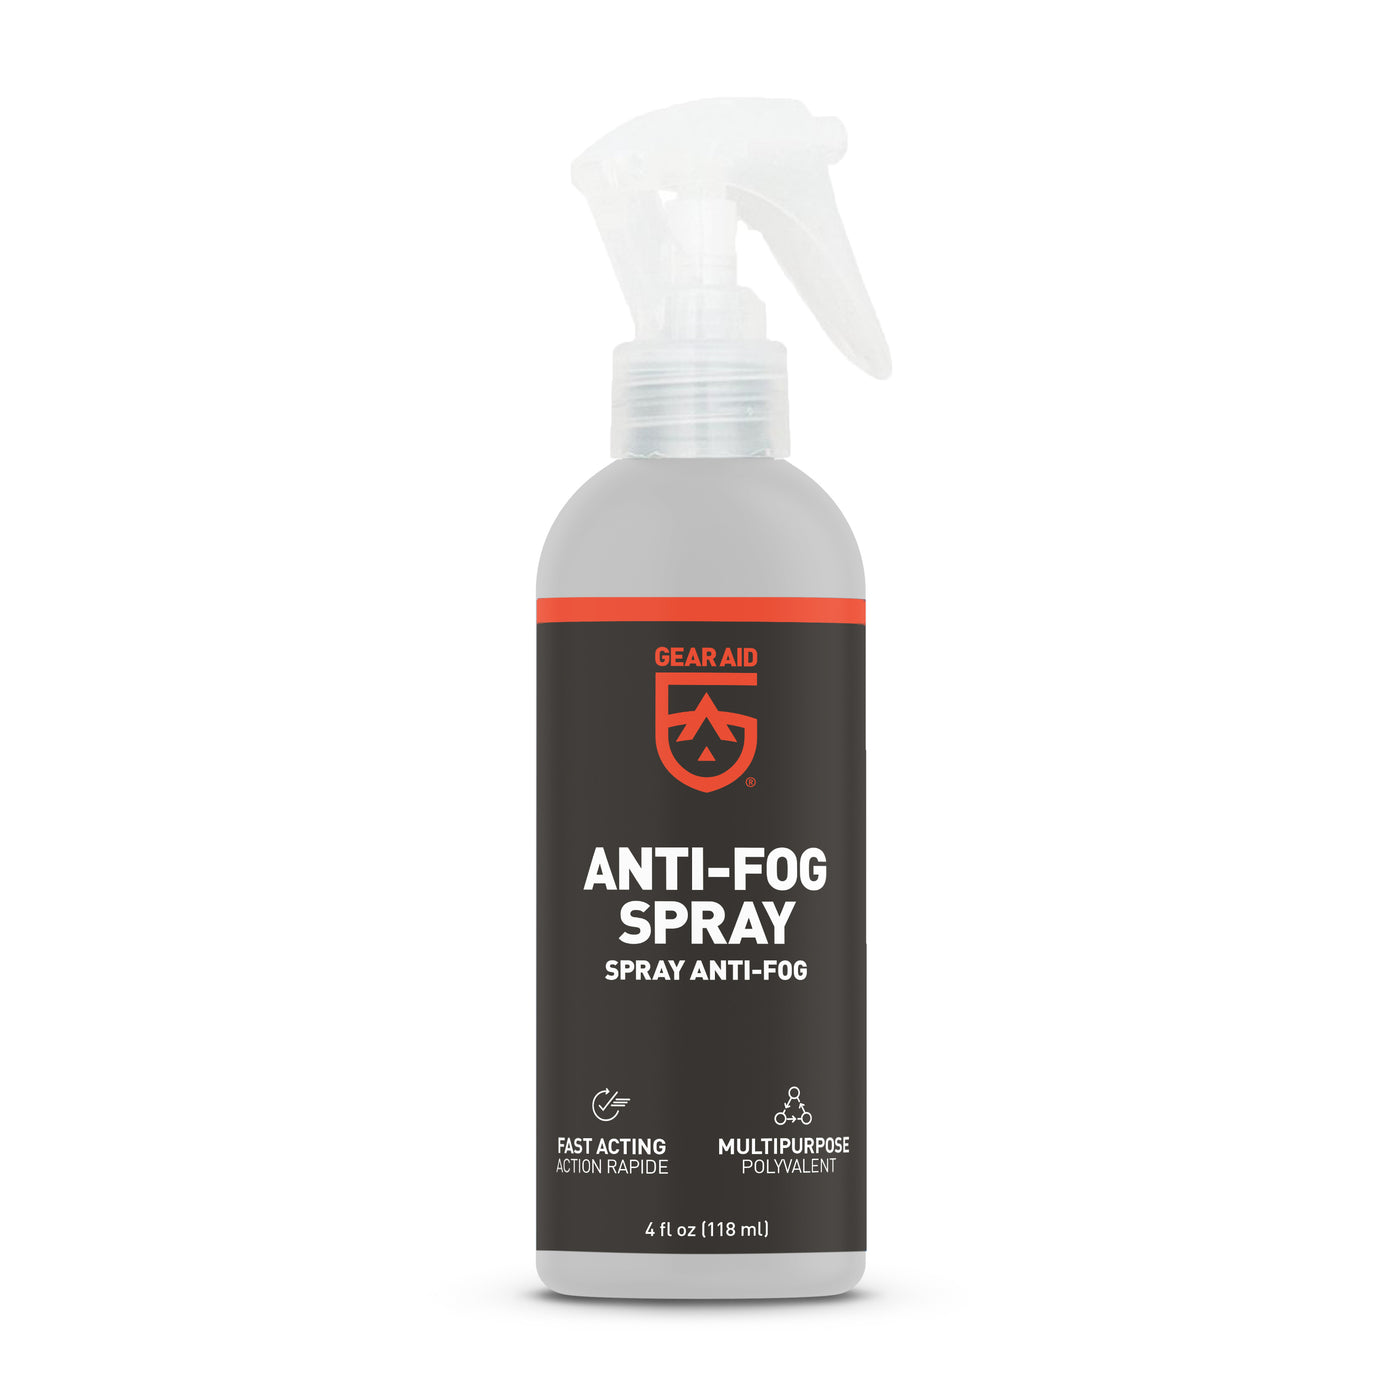 Outlaw Anti-Fog Spray Treatment